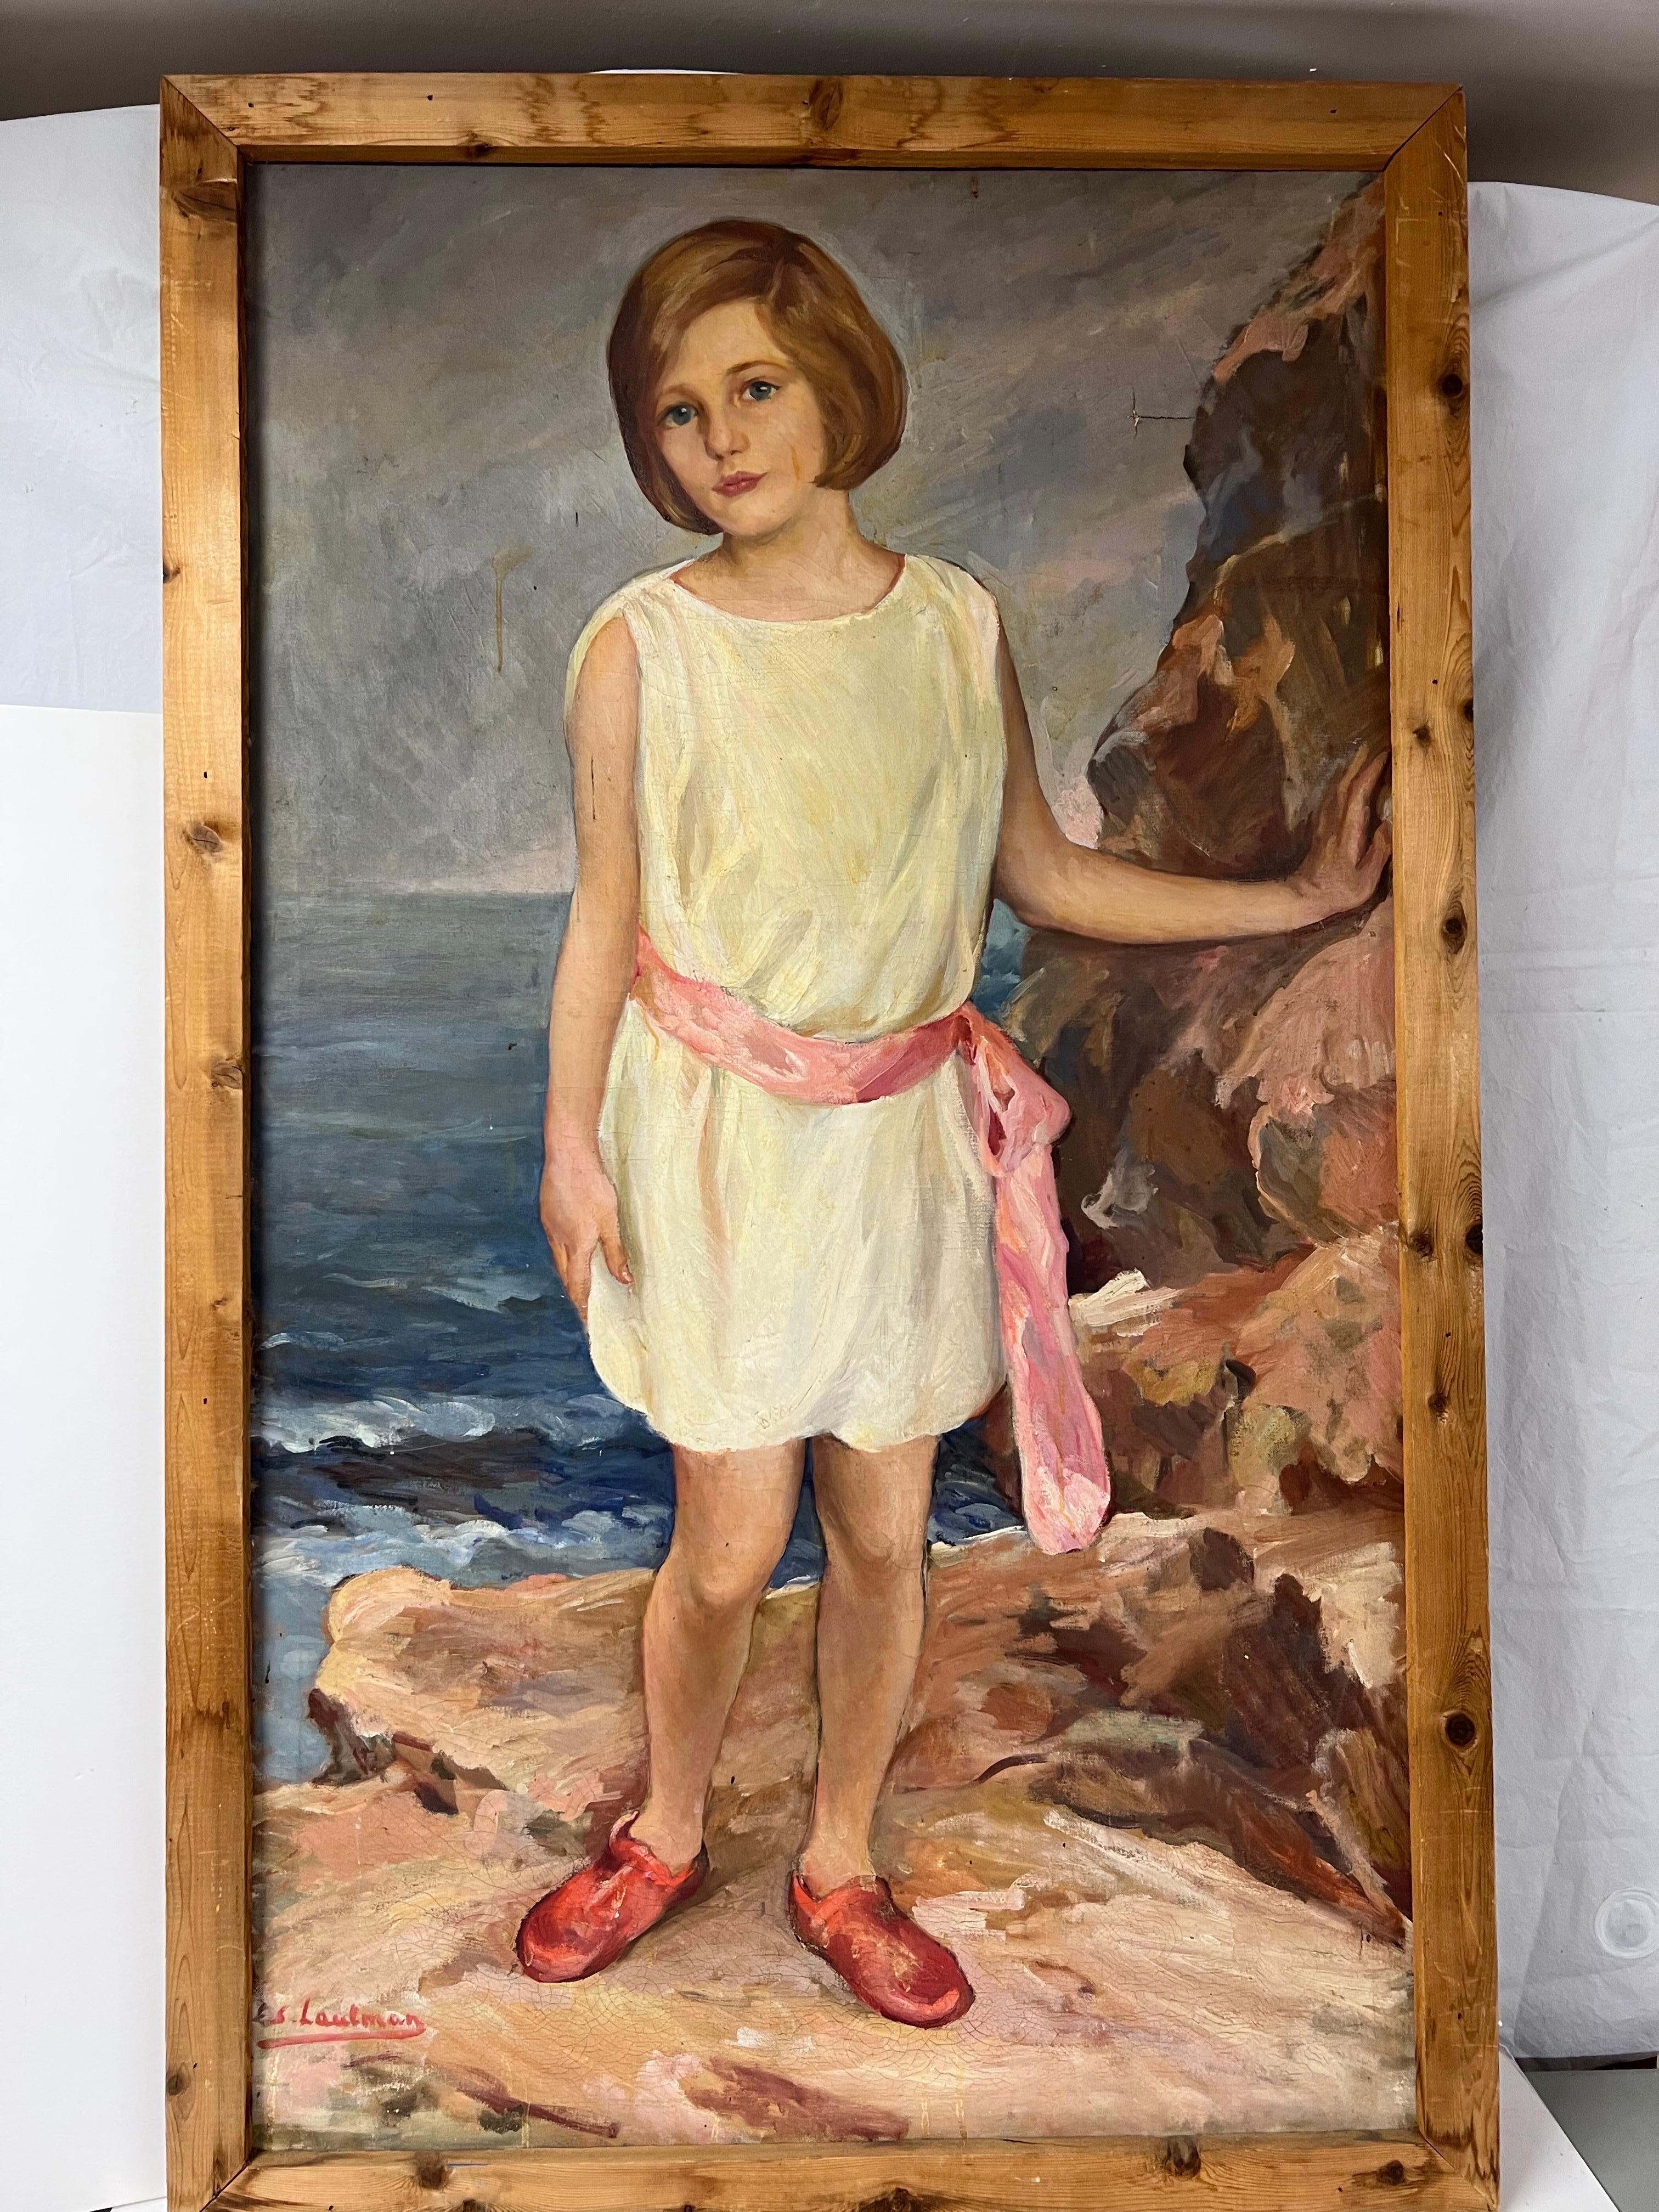 Peinture grandeur nature d'une fille au bord de la mer. Signé de façon illisible par E.S. Laufman ?
Belle composition d'une jeune fille debout au bord de l'océan. Elle est romantiquement capturée avec ses lèvres roses et sa ceinture assortie alors